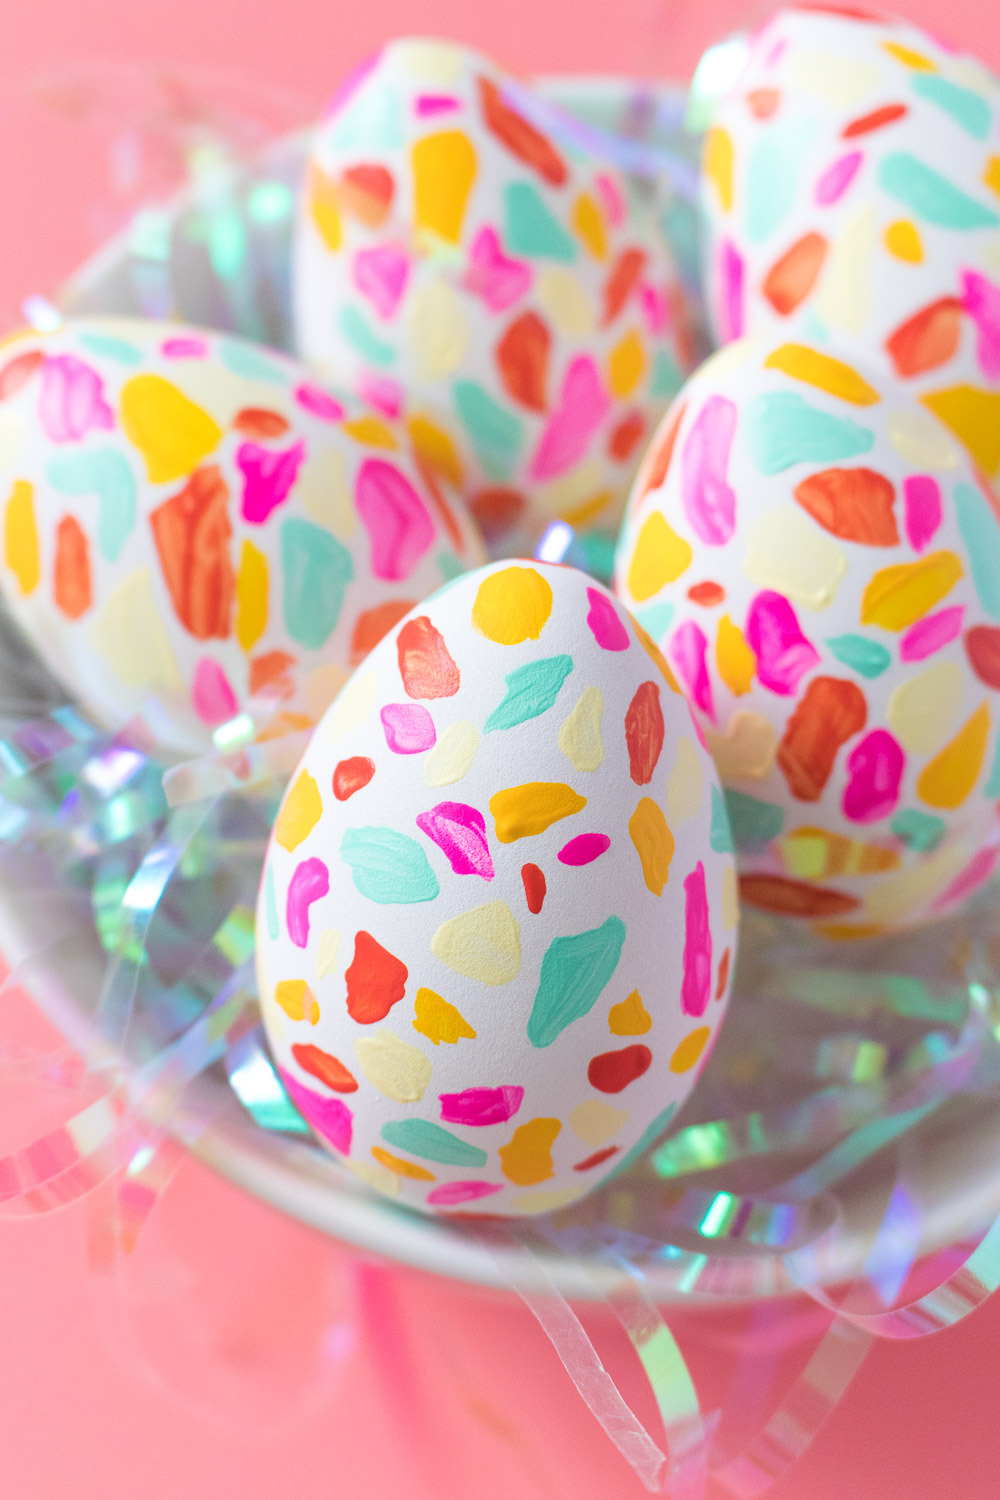 originales ejemplos de huevos de pascua decorados, huevos coloridos decorados con pintura verde, amarillo, rosado 